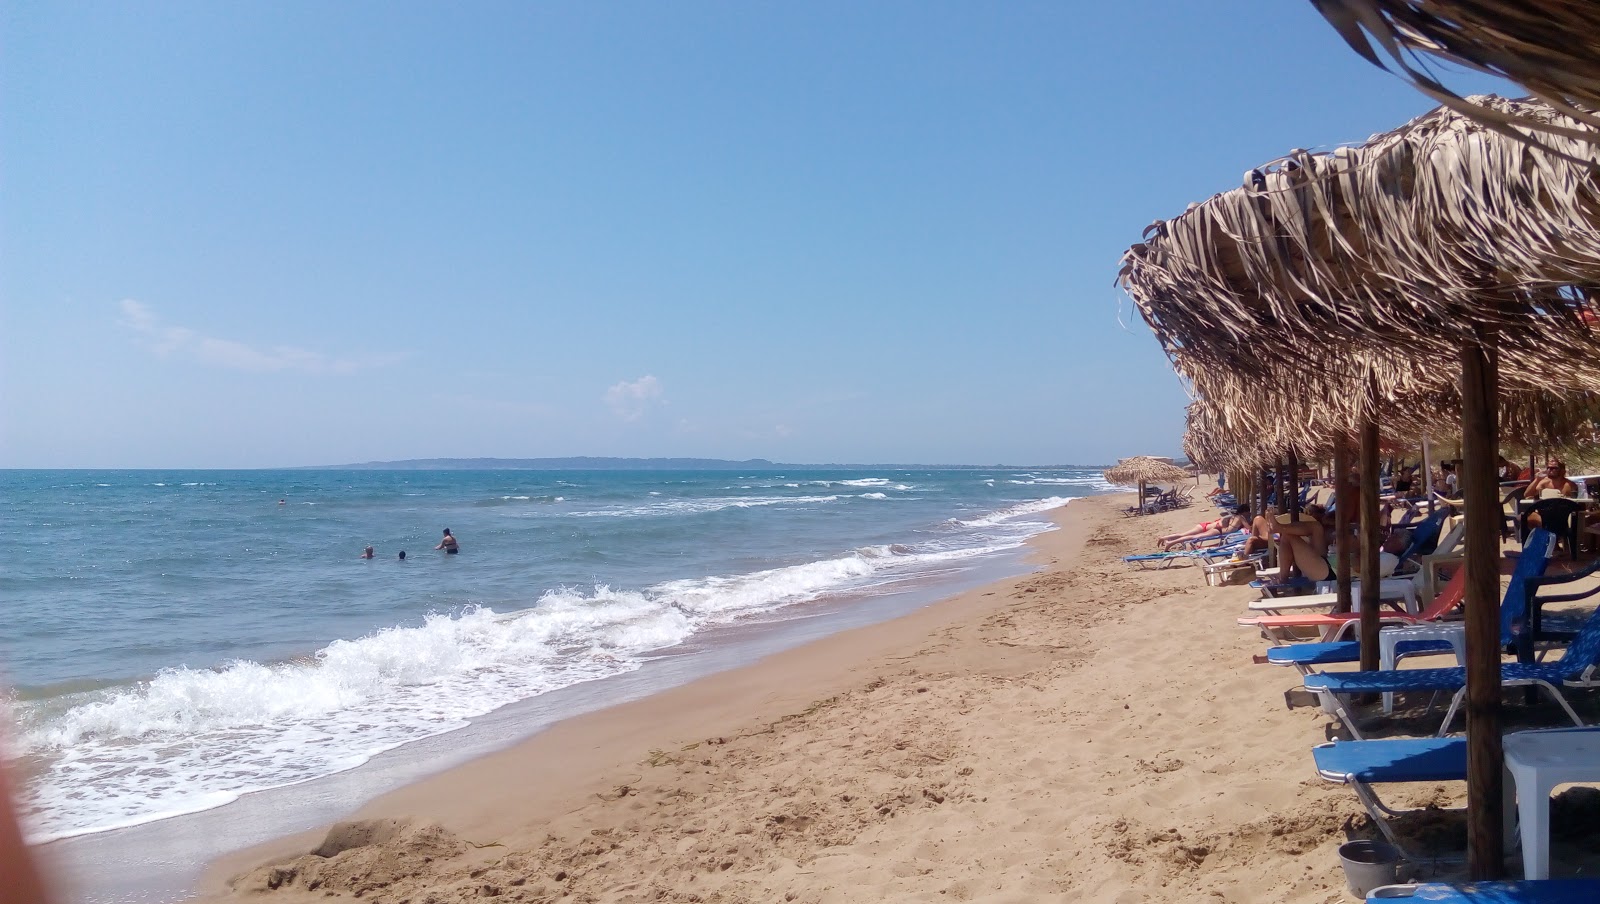 Zdjęcie Paralia Spiantza z przestronna plaża